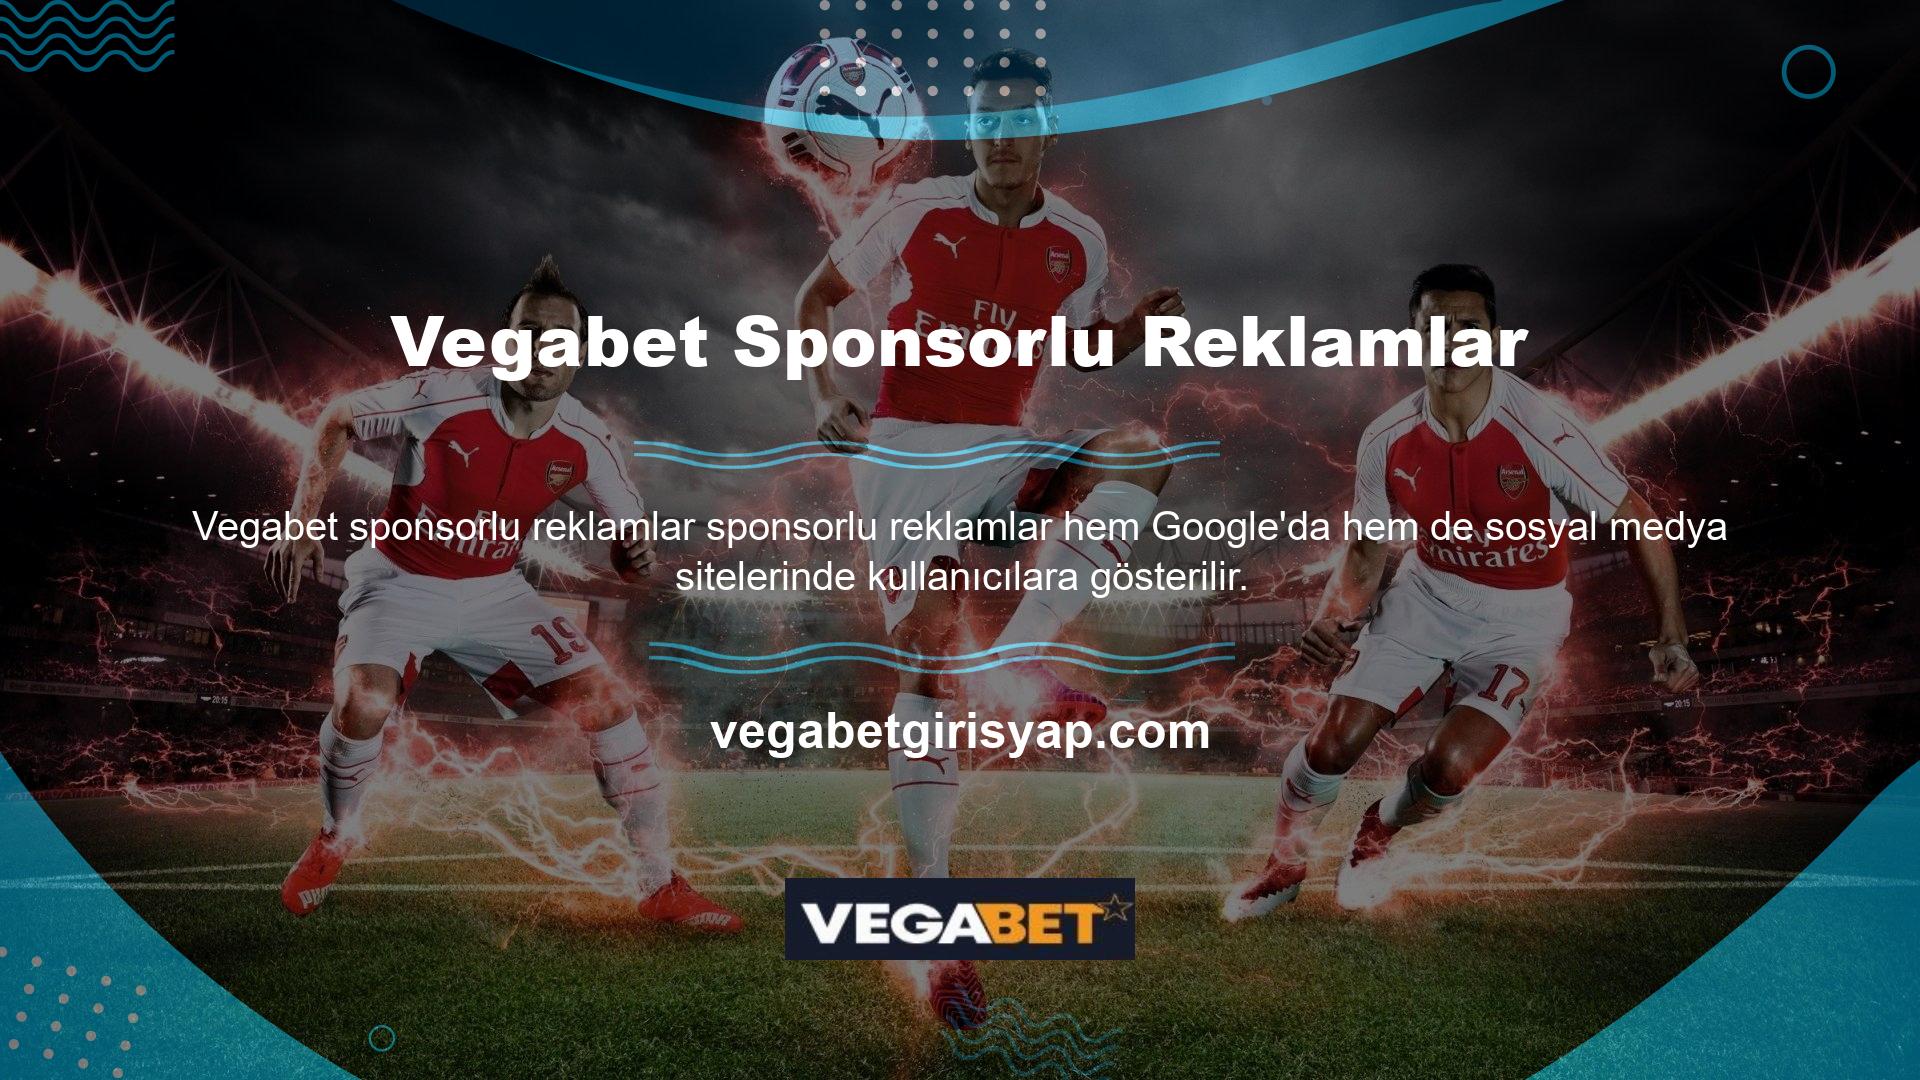 Daha önce bir Vegabet web sitesine giriş yaptıysanız, arama motorları sizi izleyecek ve size alakalı reklamlar gösterecektir